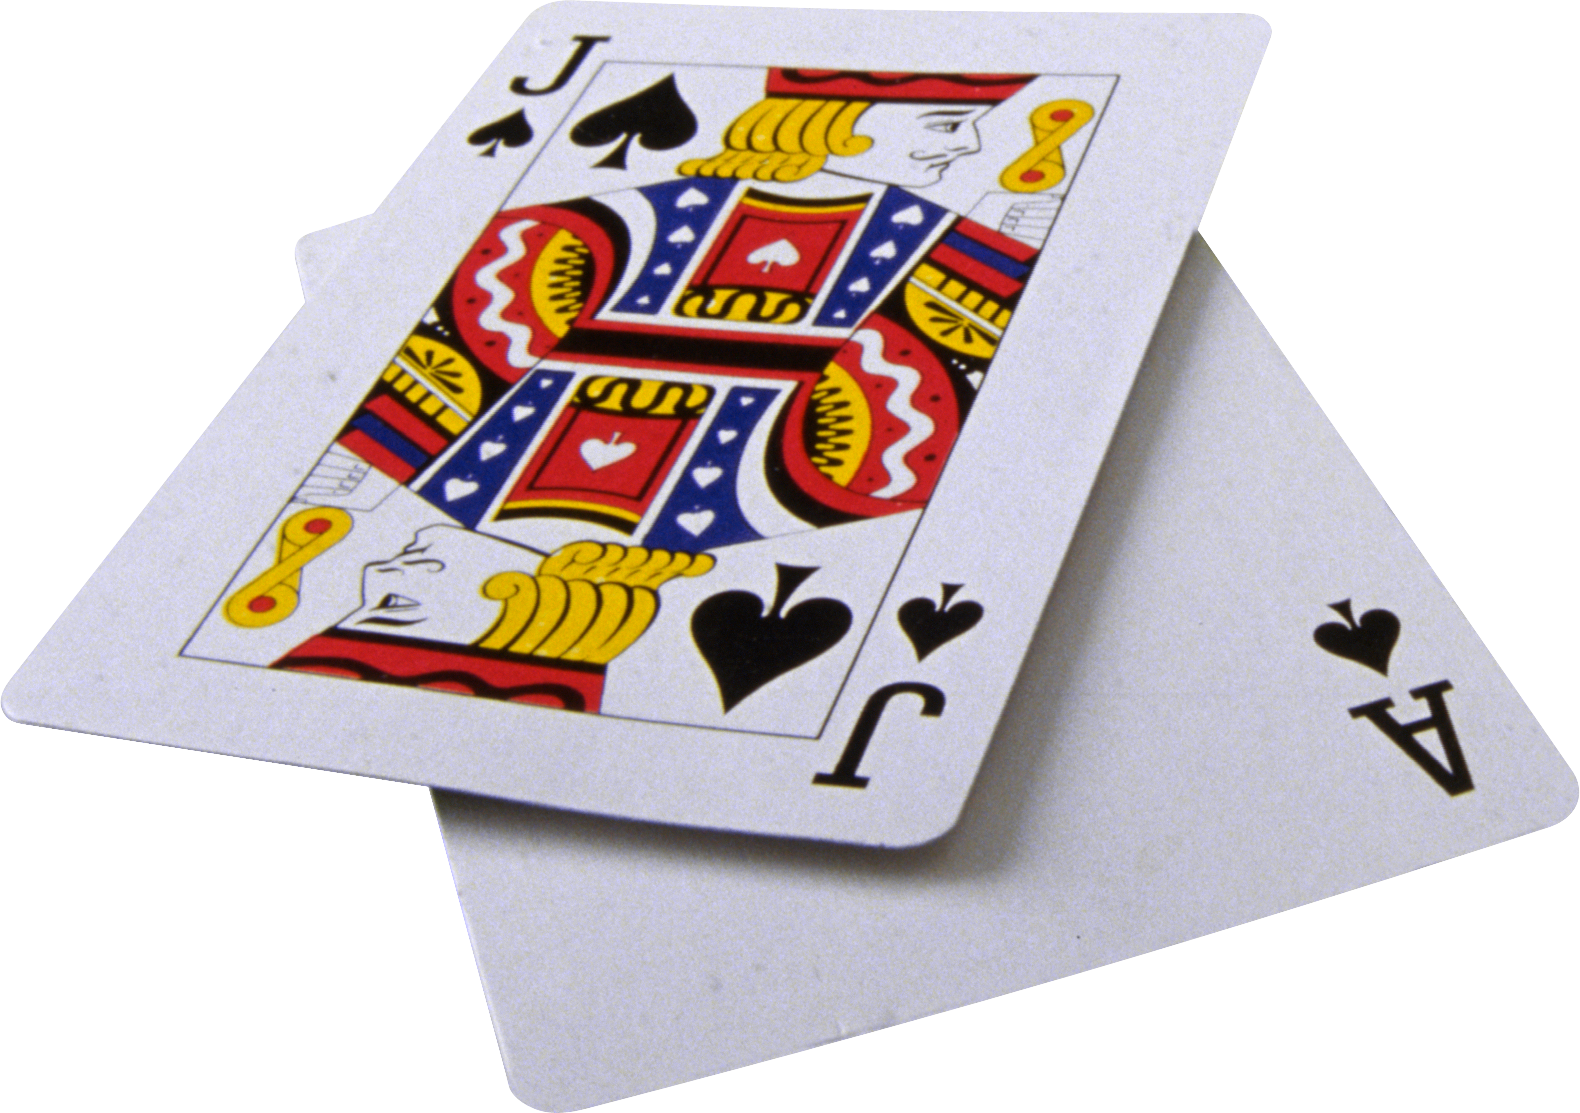 Card Game Playing Card Gambling PNG - Free Download